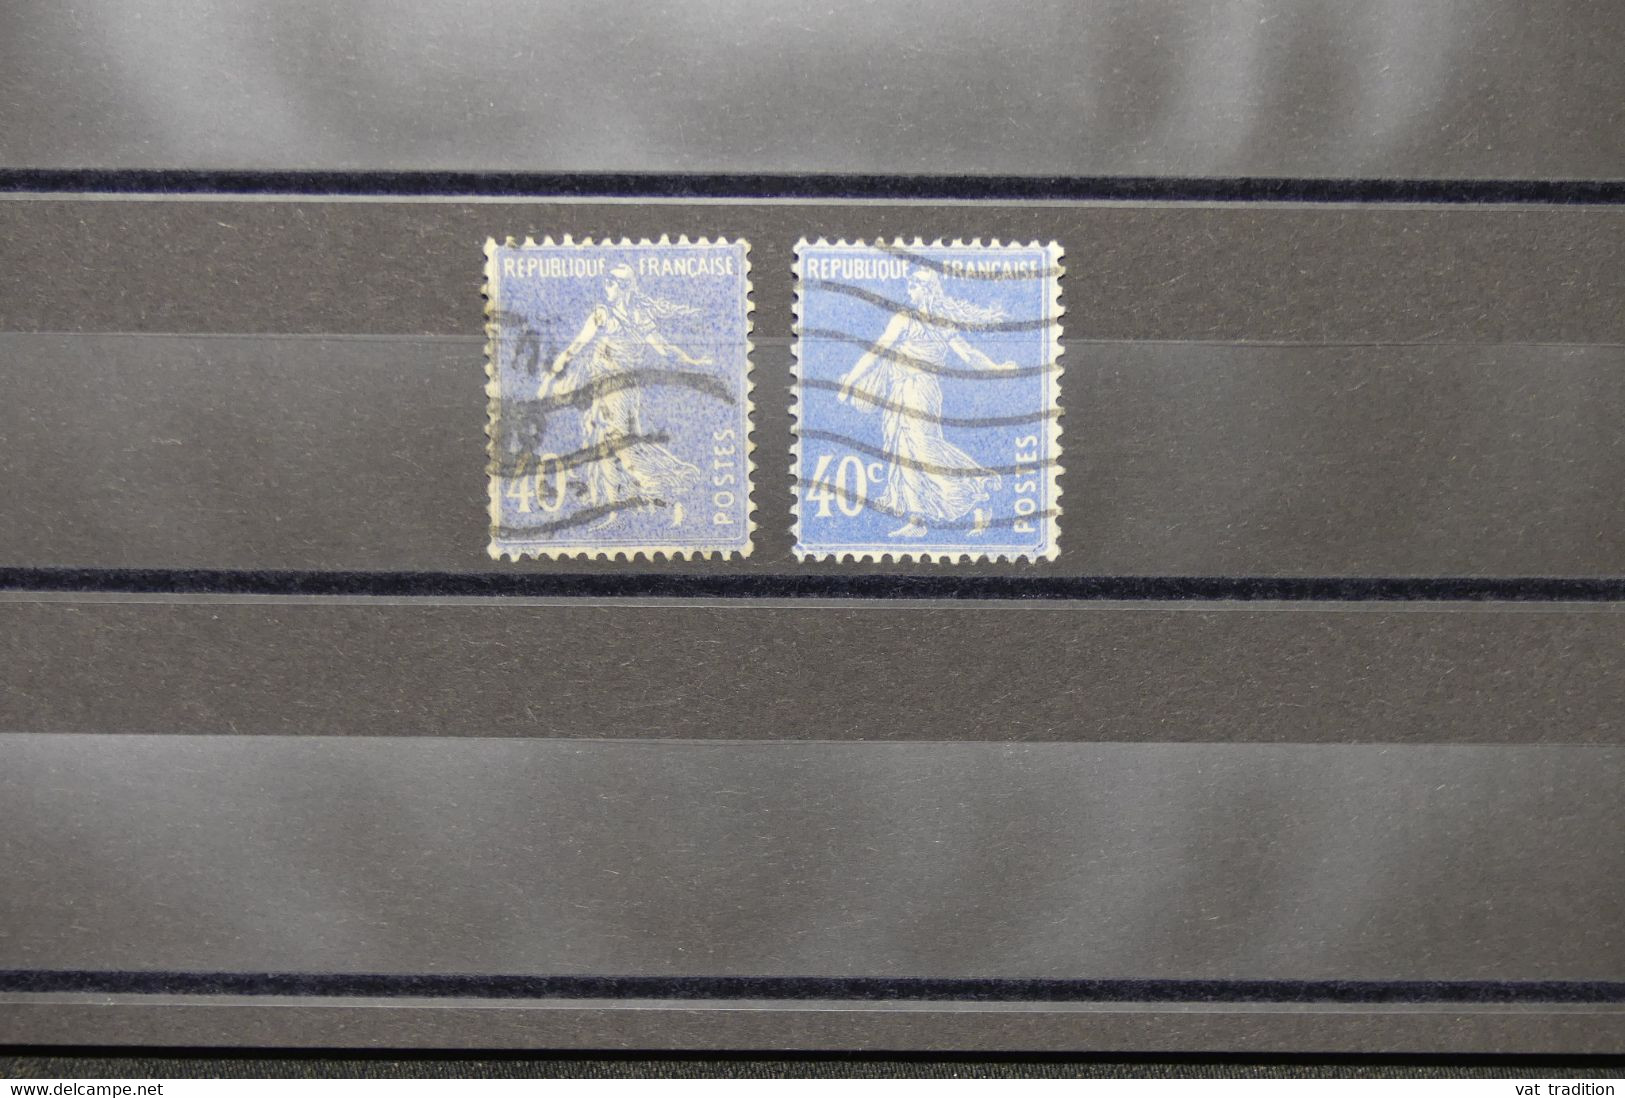 FRANCE - Variété - N° Yvert 237 - Type Semeuse - Mot Postes Maigre + 1 Gras - Oblitéré - L 73990 - Gebruikt